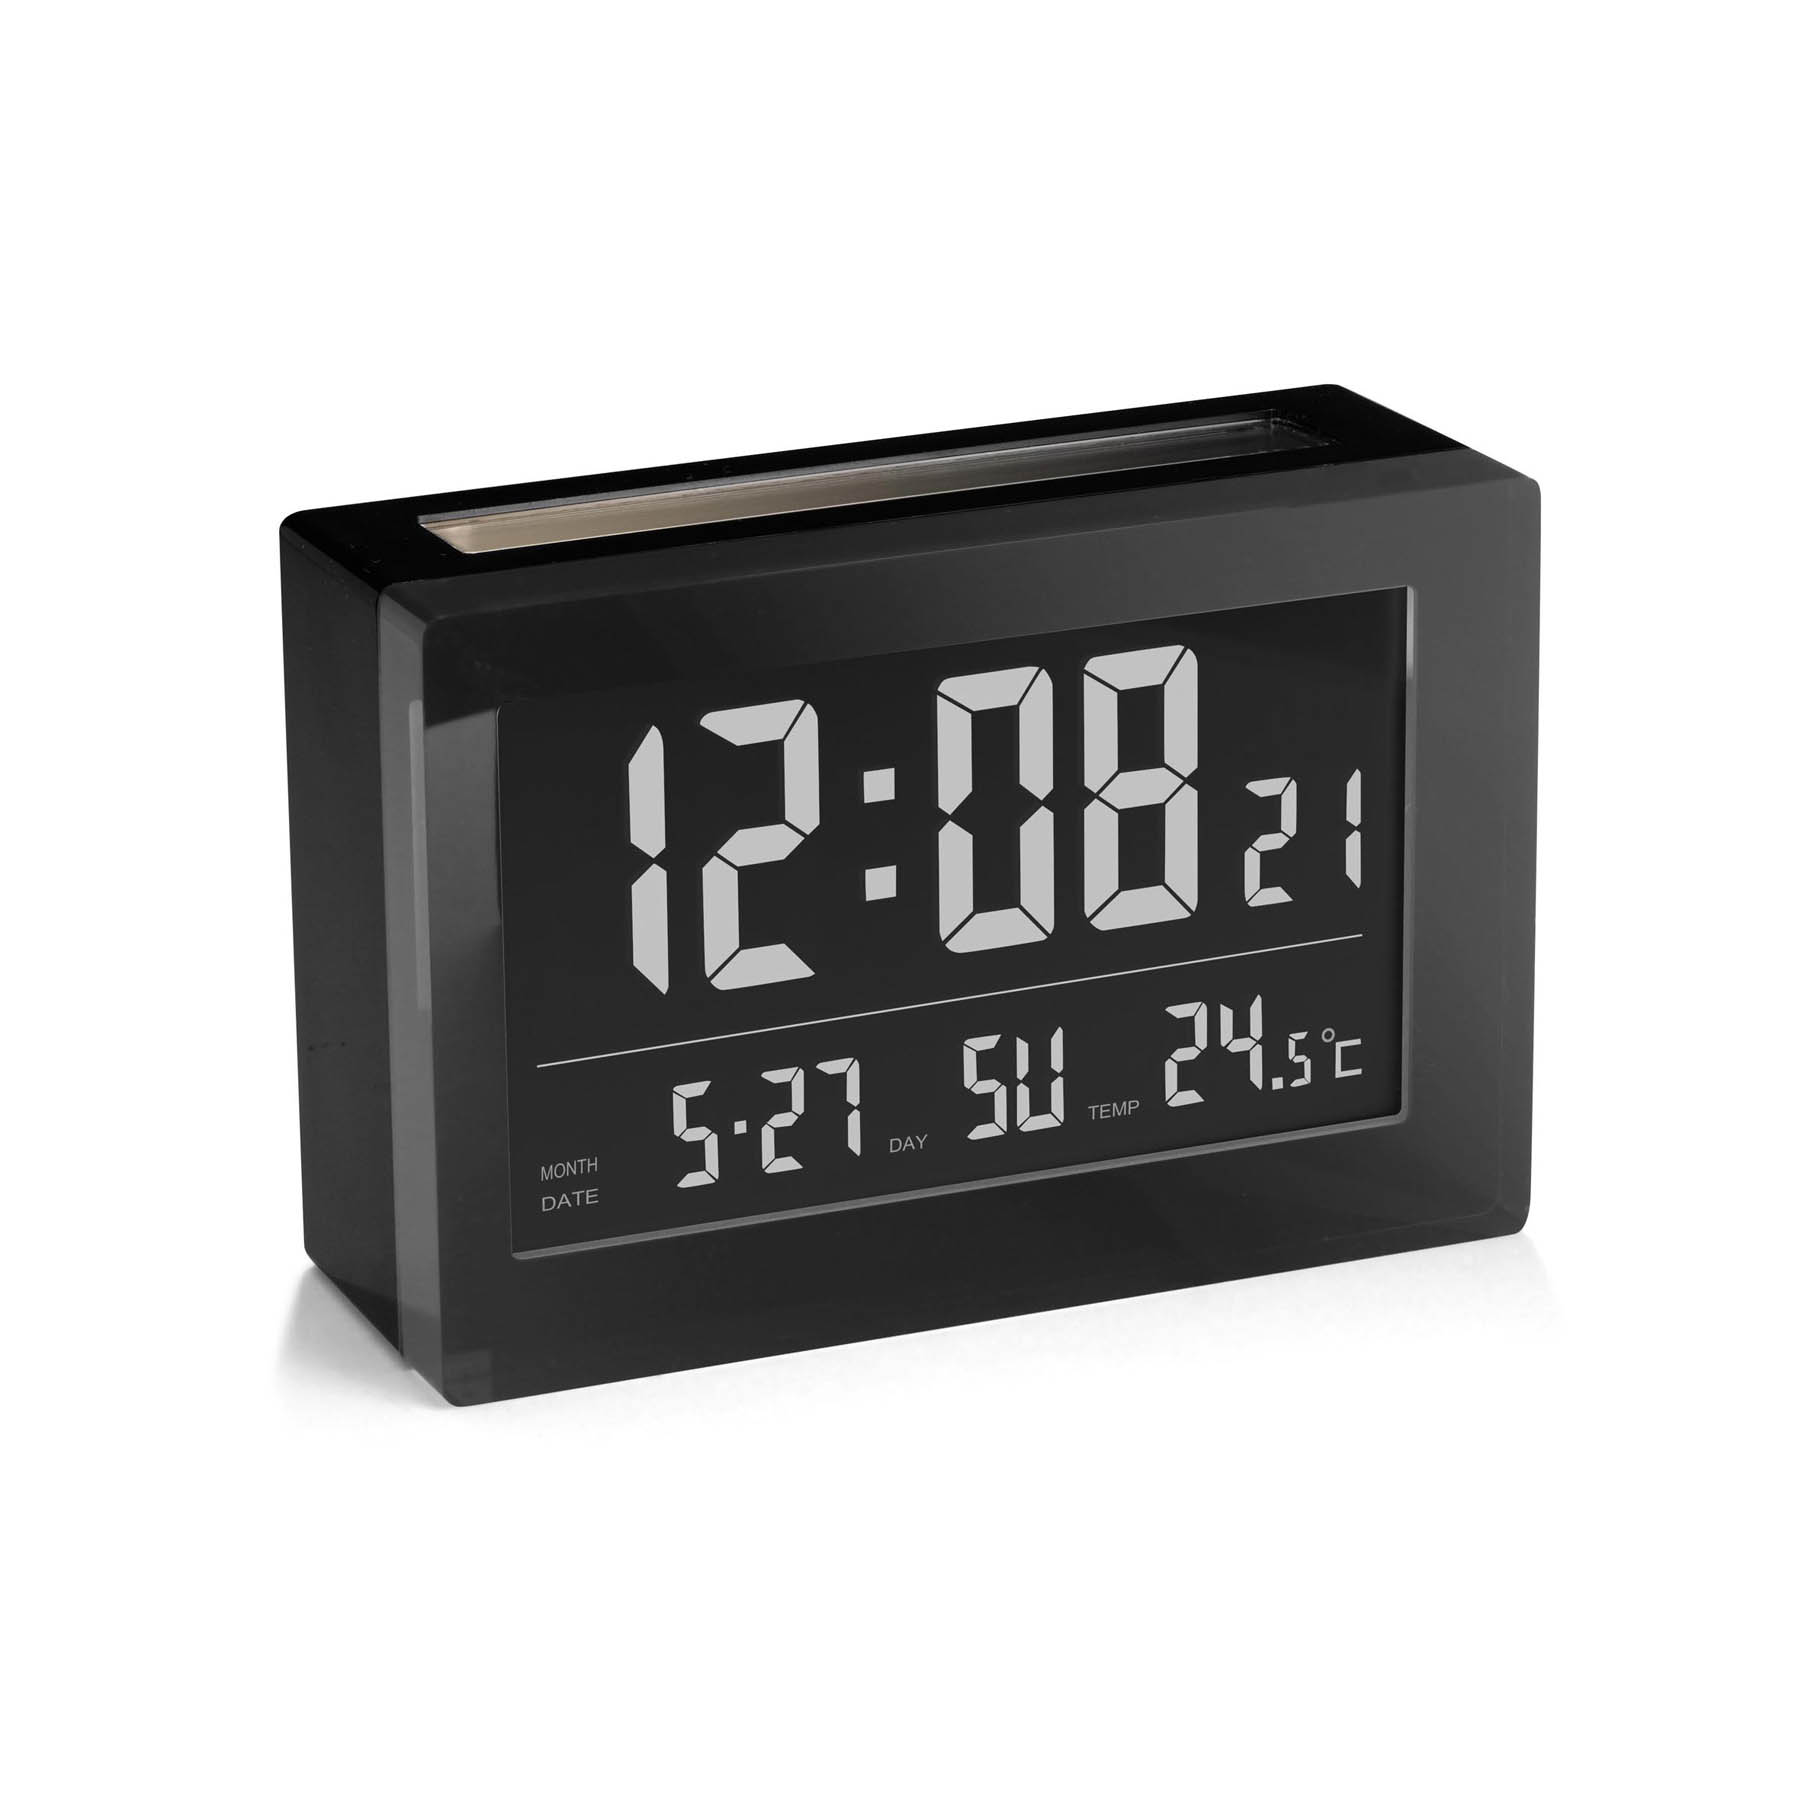 Настольные часы будильник с подсветкой. Часы будильник спектр кварц ск0719. Настольные электронные часы at-Pulsar 6631x. Часы цифровые настольные t7001. Настольные цифровые часы-будильник TFA 98.1082.02.